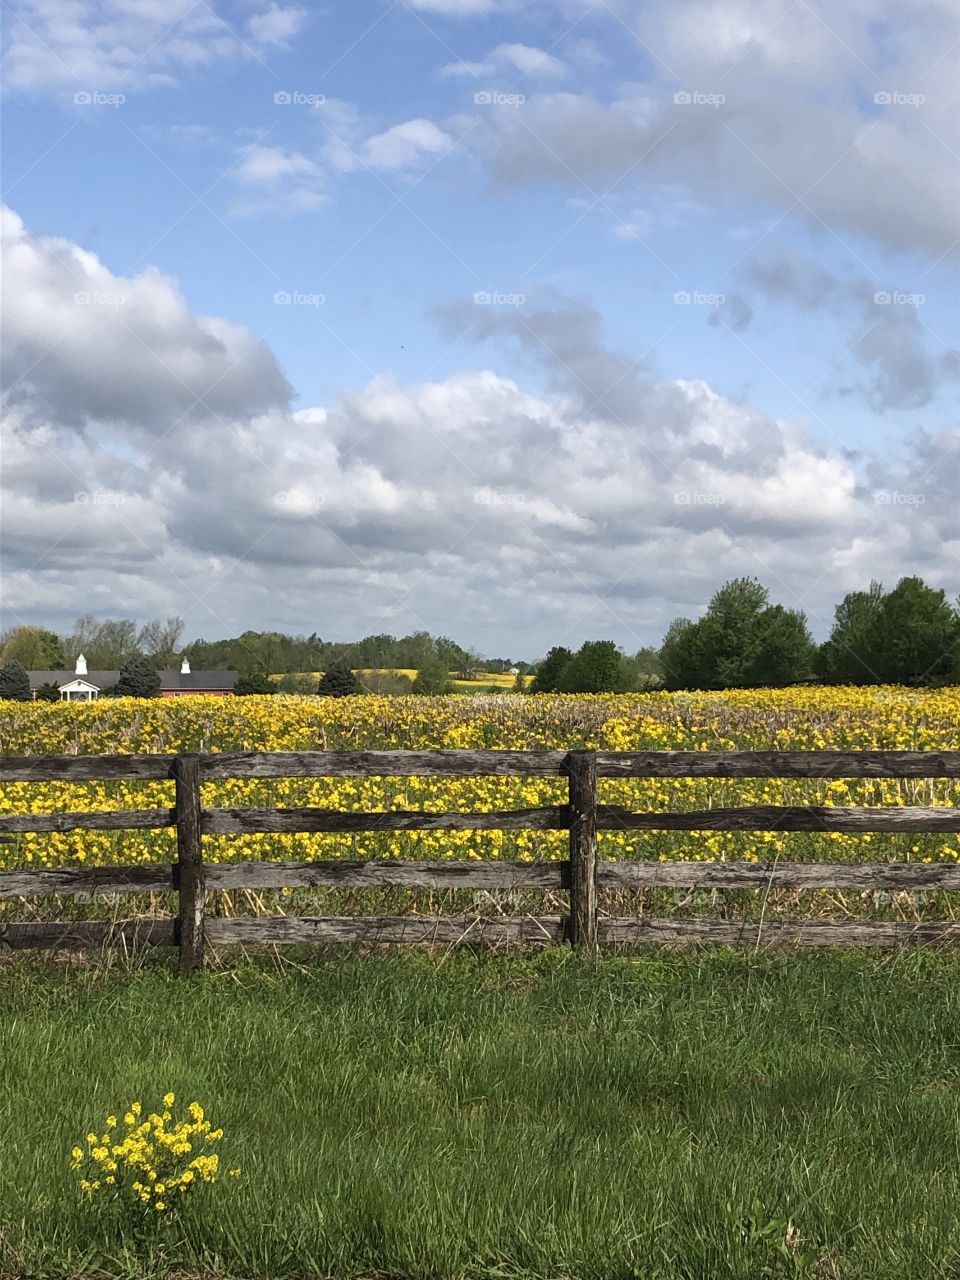 Wildflowers in a Kentucky field